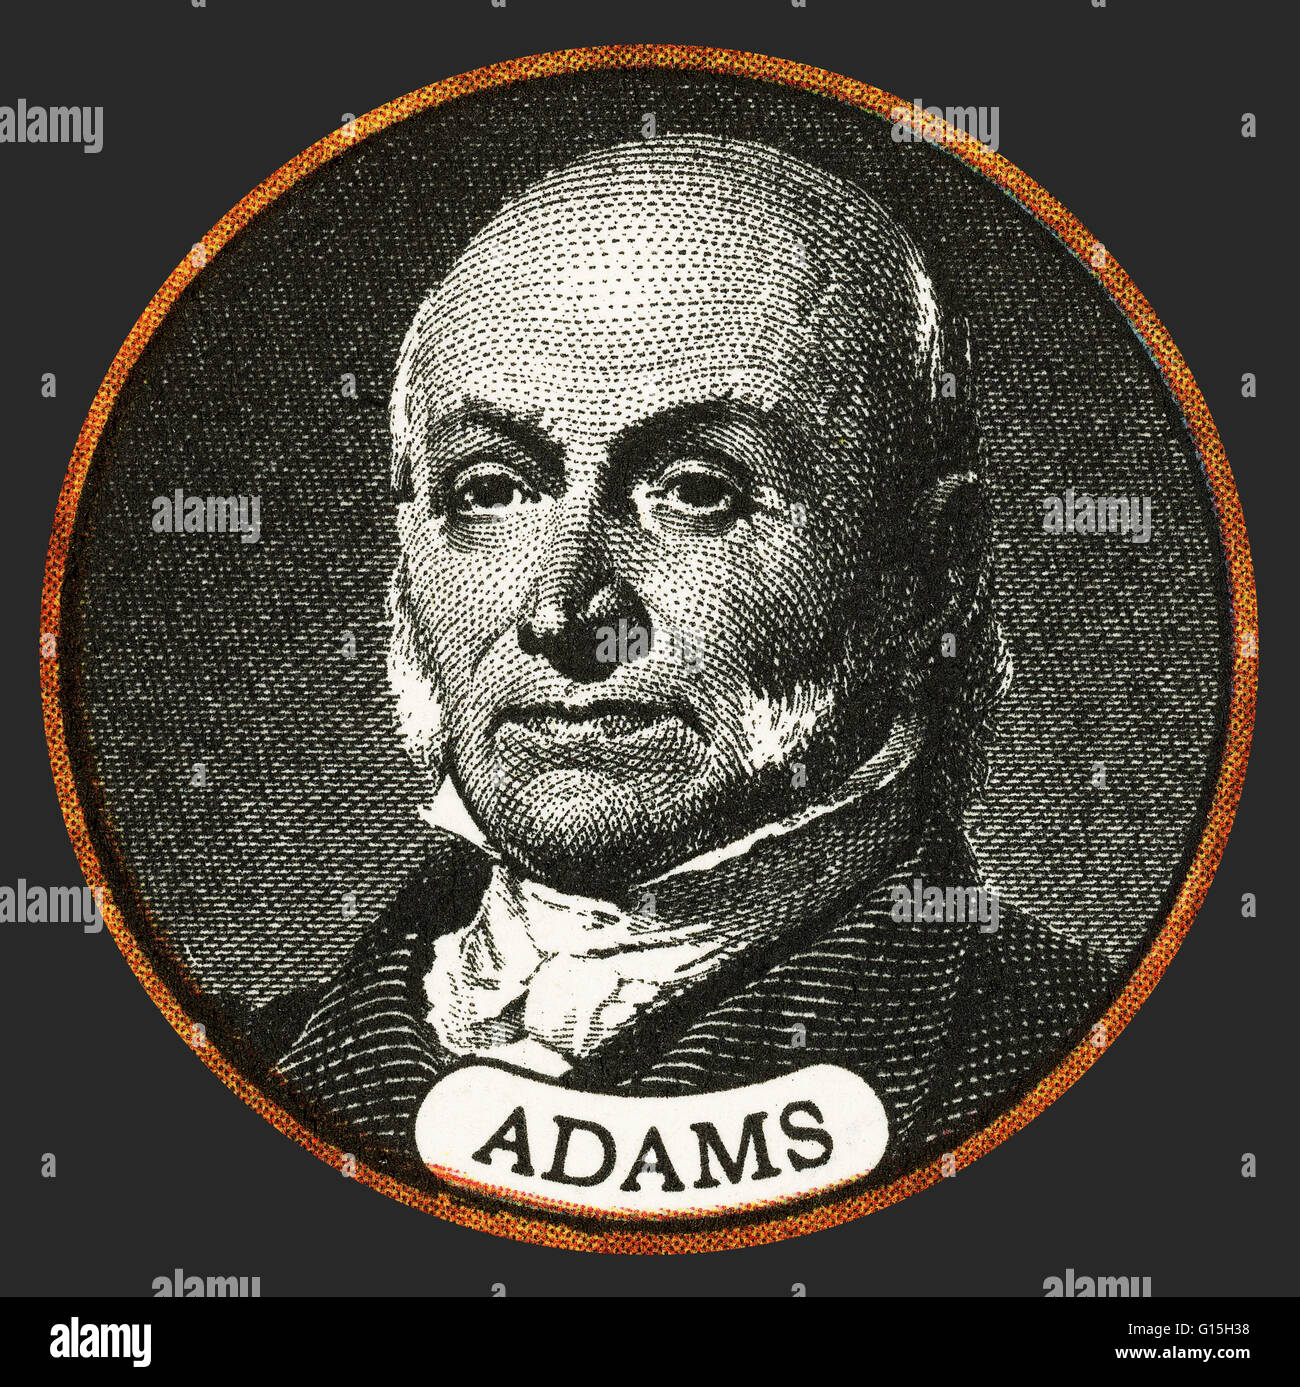 John Quincy Adams (11. Juli 1767 - 23. Februar 1848) war der sechste Präsident der Vereinigten Staaten (von 1825-1829). Er war auch ein US-amerikanischer Diplomat und im Senat und Repräsentantenhaus. Er war Mitglied der föderalistischen, demokratischen Stockfoto